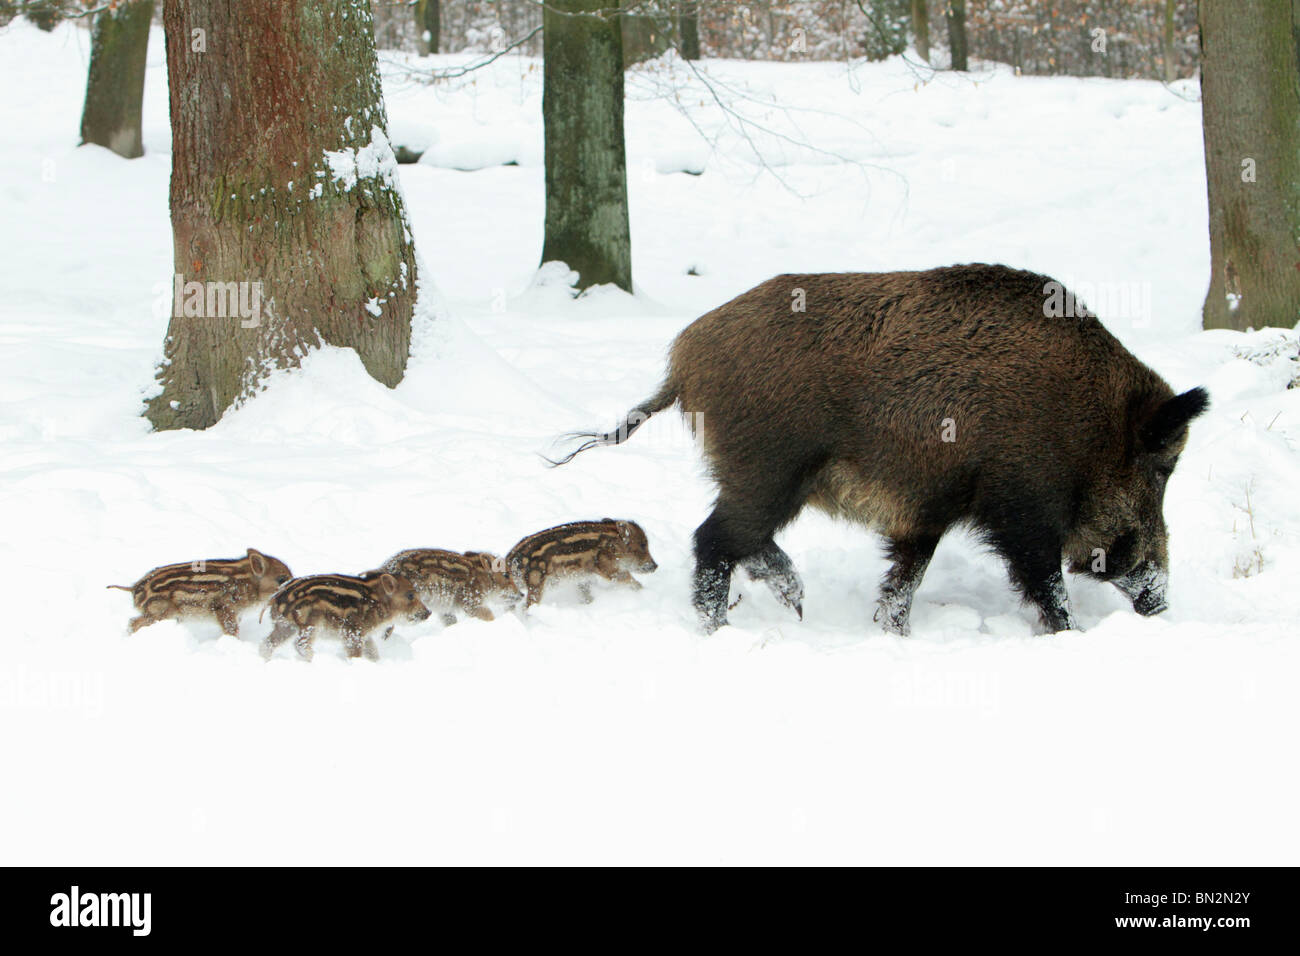 Cerdo salvaje europeo o el jabalí (Sus scrofa), SOW llevándola cuatro lechones aunque bosque cubierto de nieve, invierno, Alemania Foto de stock